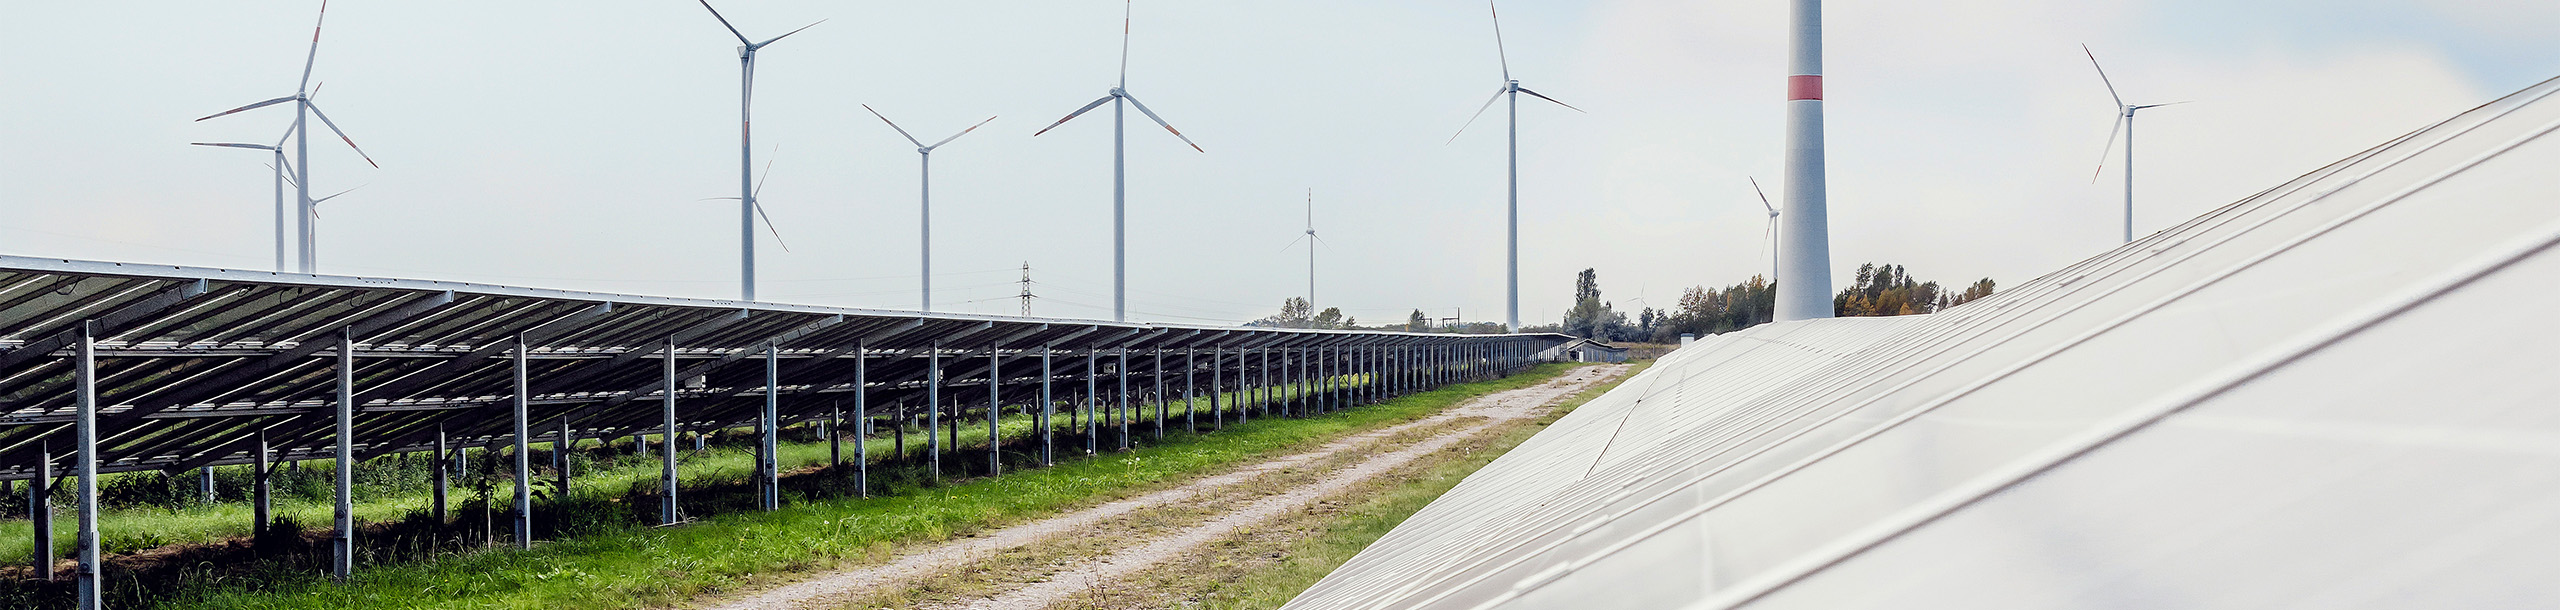 Solarpaneele und Windräder zur Stromerzeugung